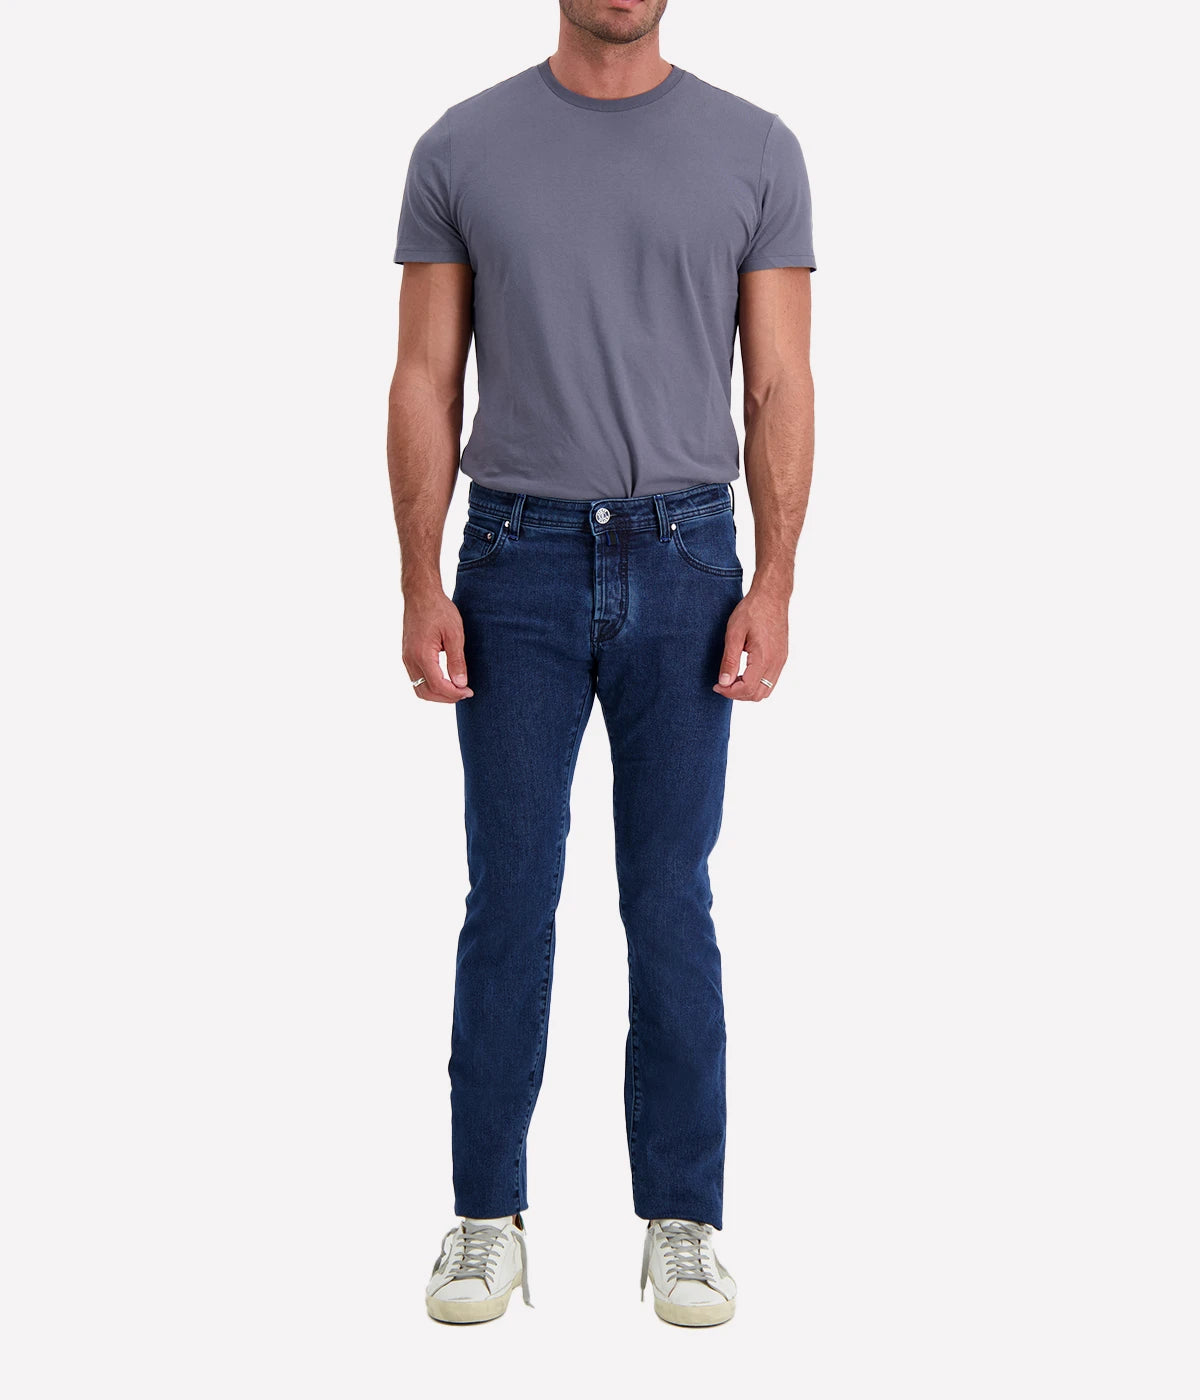 Nick 5 Pocket Slim Fit Jean in Washed Black & Navy